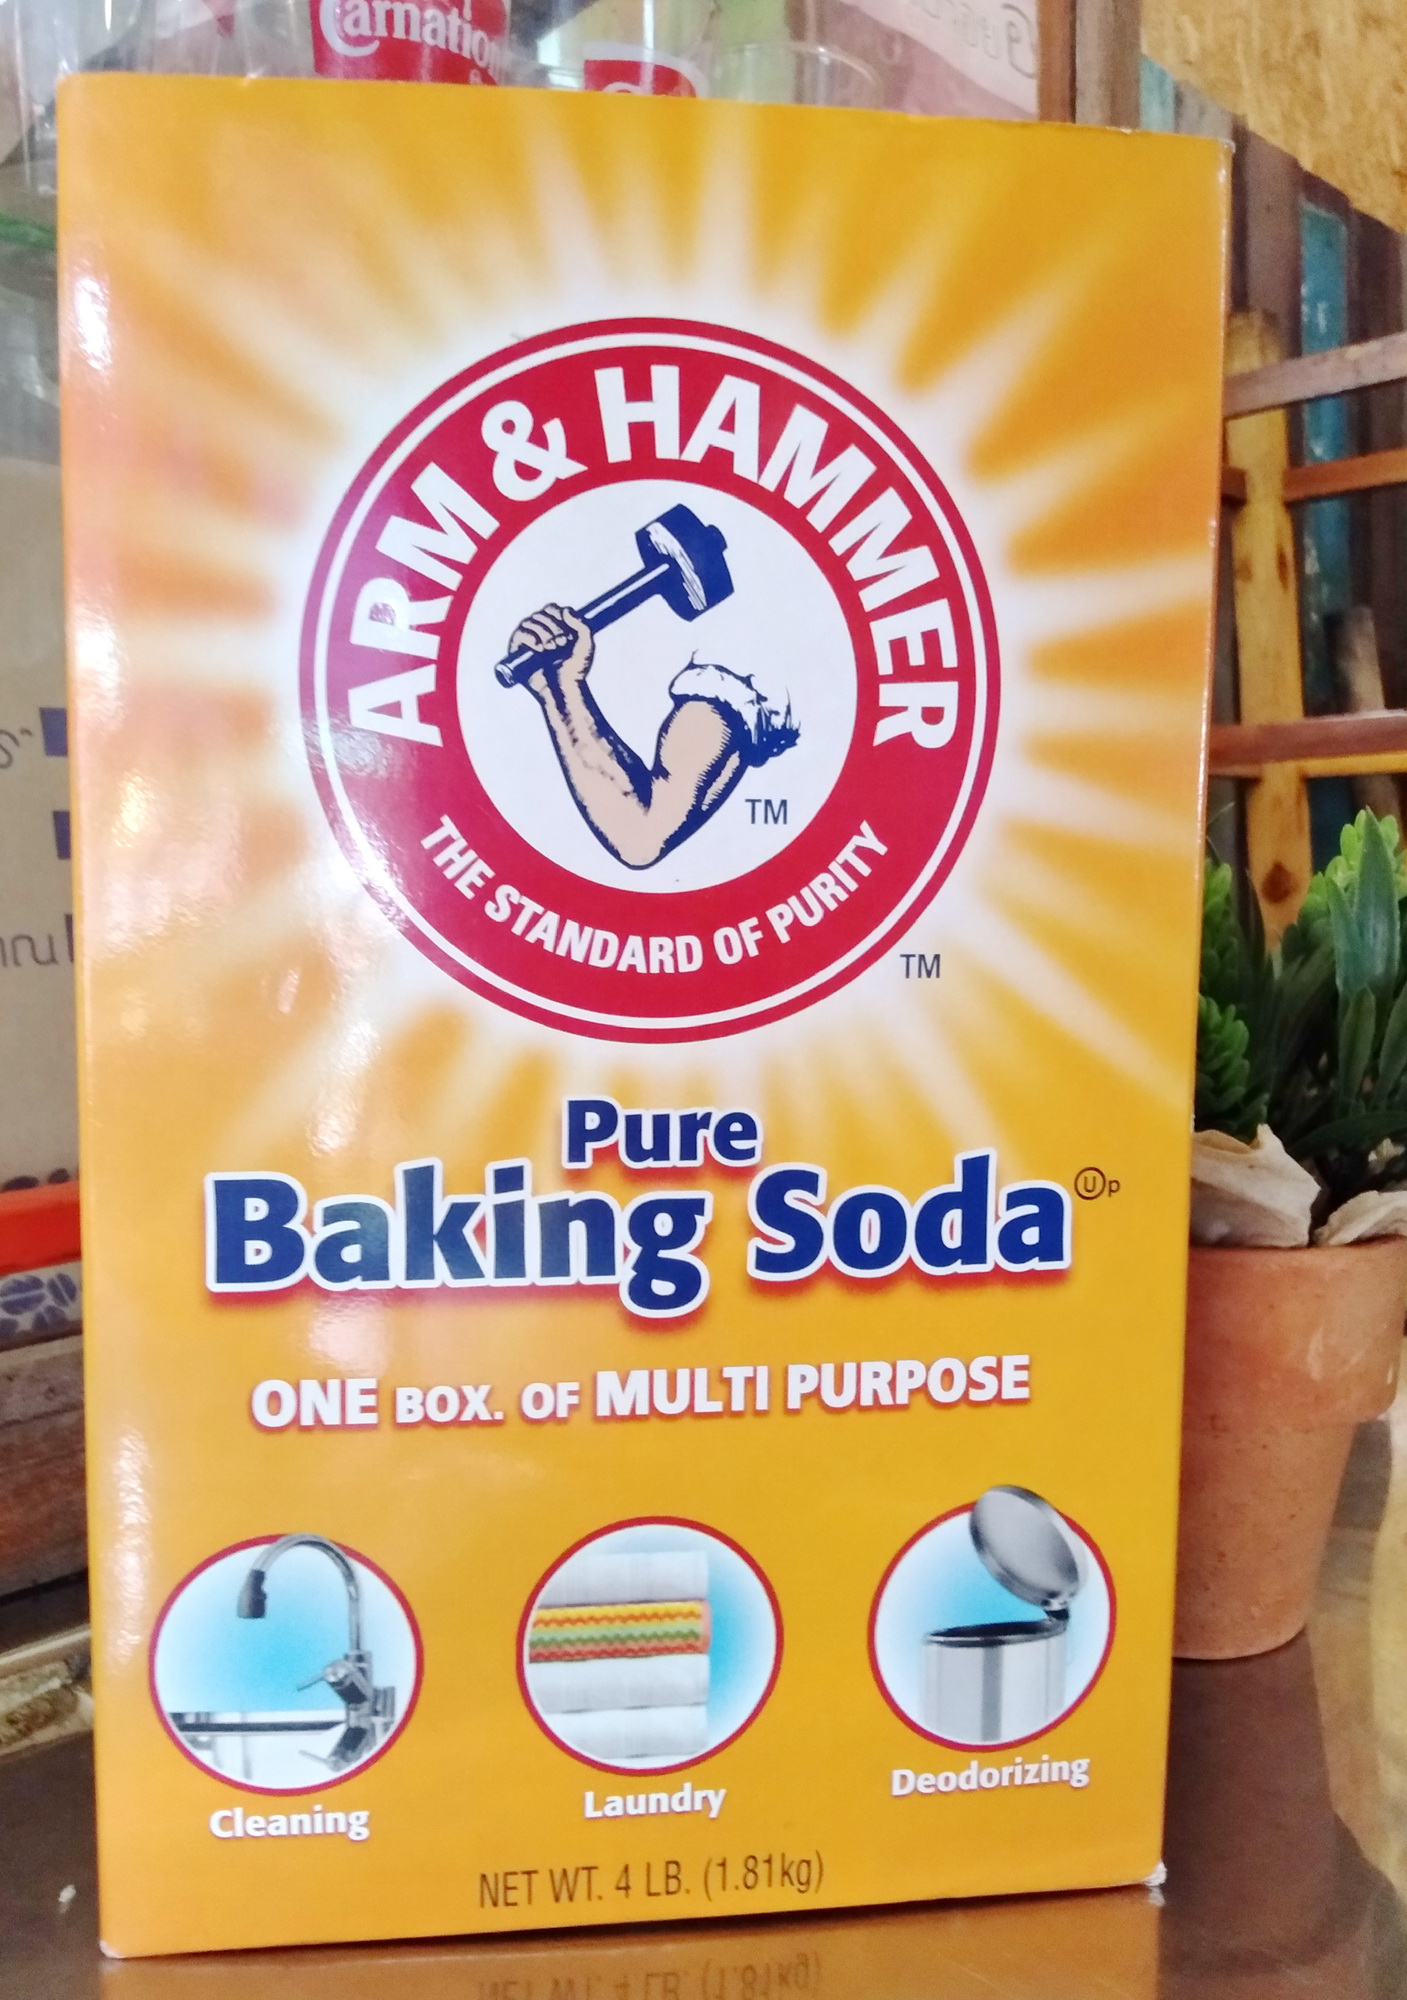 เบคกิ้งโซดา เบกกิ้งโซดาแบบเนื้อละเอียด ARM & HAMMER™ 100% Pure Baking Soda 4 lb (1.81 kg.) America's # 1 Trusted Baking Soda Brand ใช้ทำความสะอาดภาชนะ ซักผ้า ใช้ดับกลิ่น